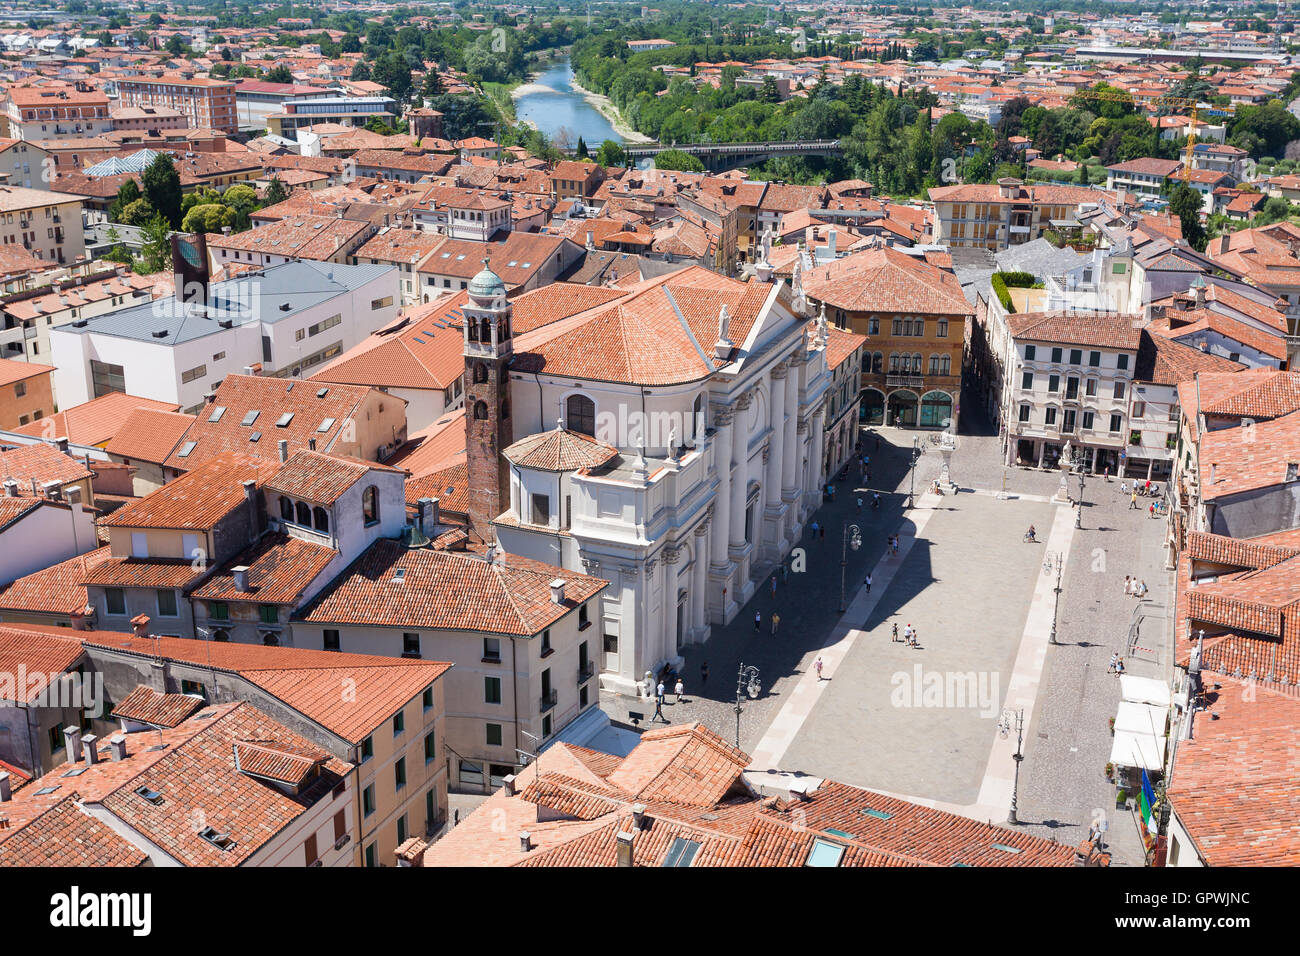 Paisaje urbano desde 'Bassano del Grappa", vista superior. Panorámica de la ciudad medieval. Paisaje típico italiano. Foto de stock